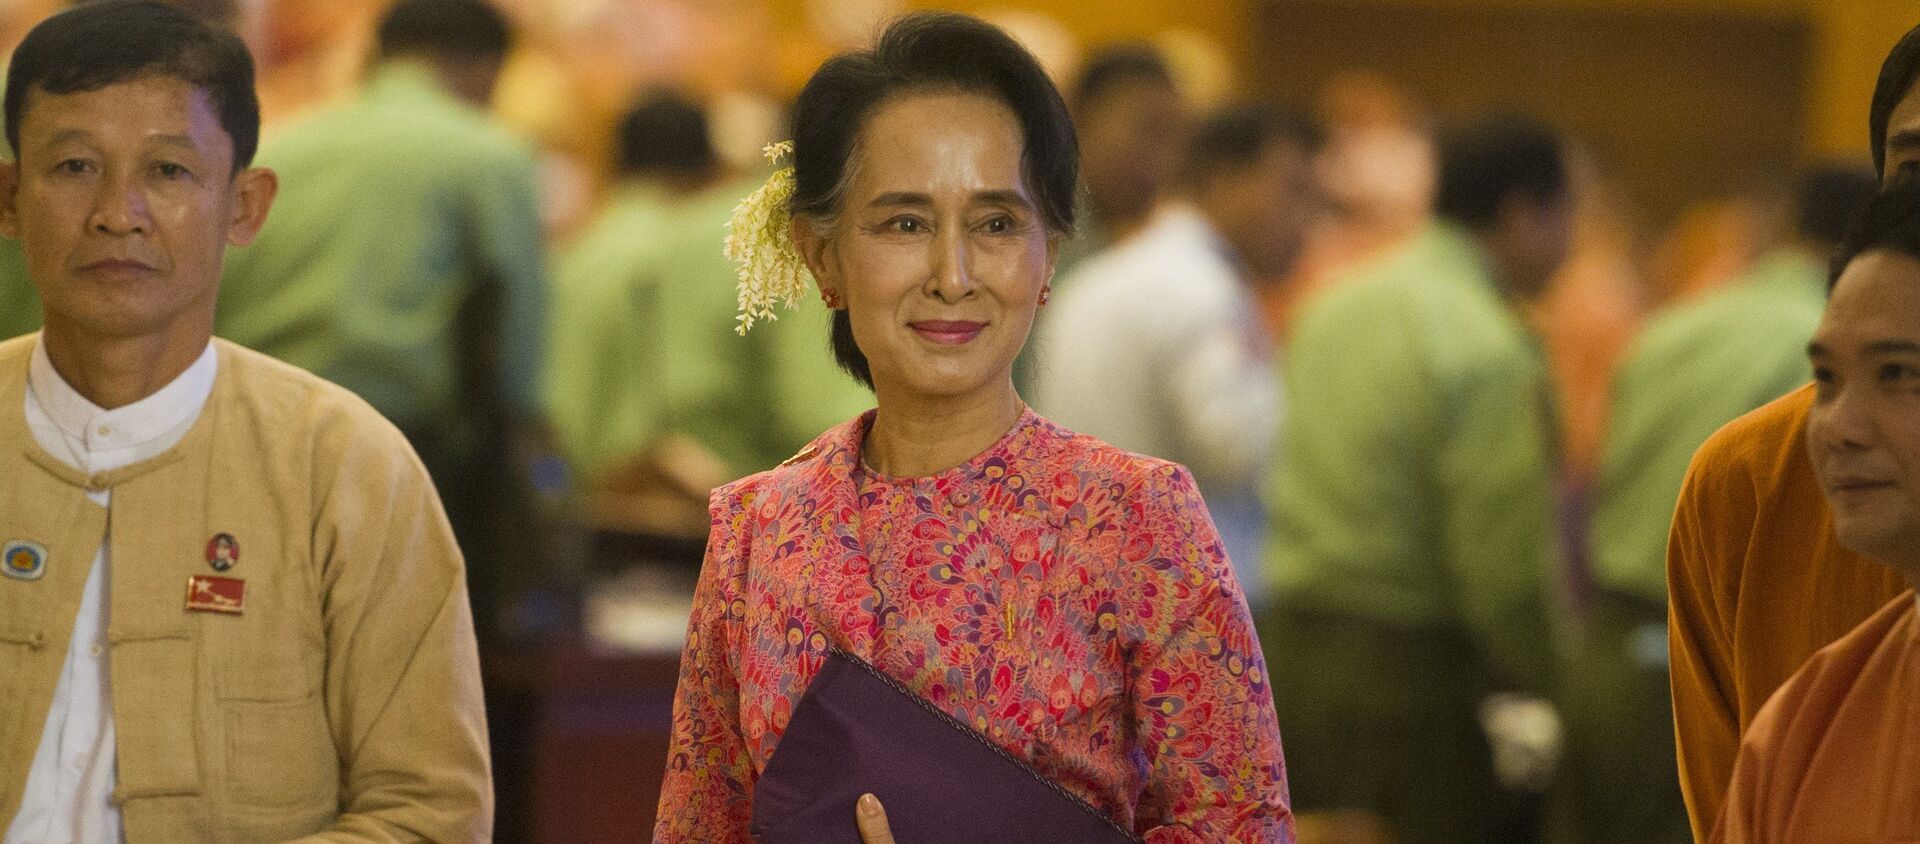 Cựu cố vấn nhà nước của Myanmar, người đoạt giải Nobel Aung San Suu Kyi. - Sputnik Việt Nam, 1920, 26.02.2021